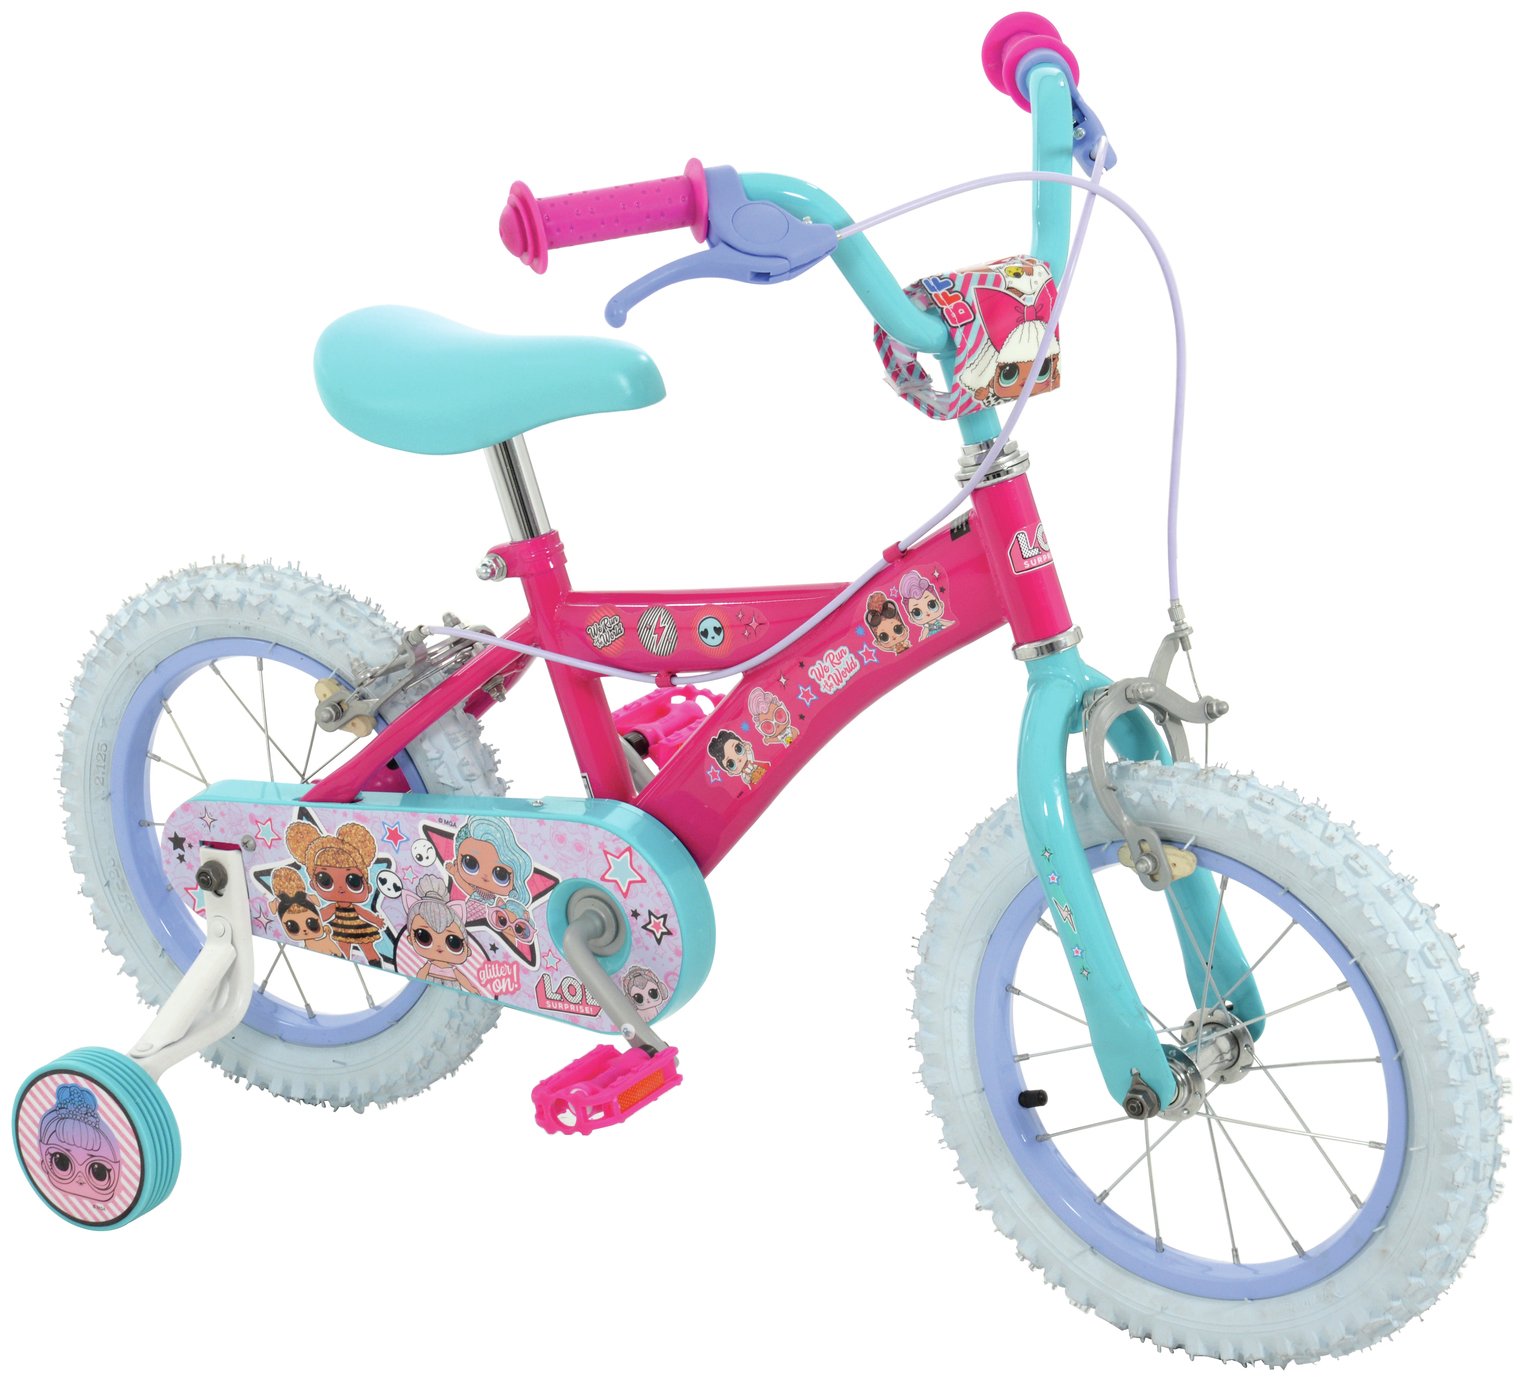 LOL Surprise 14 inch Wheel Size Kids Bike